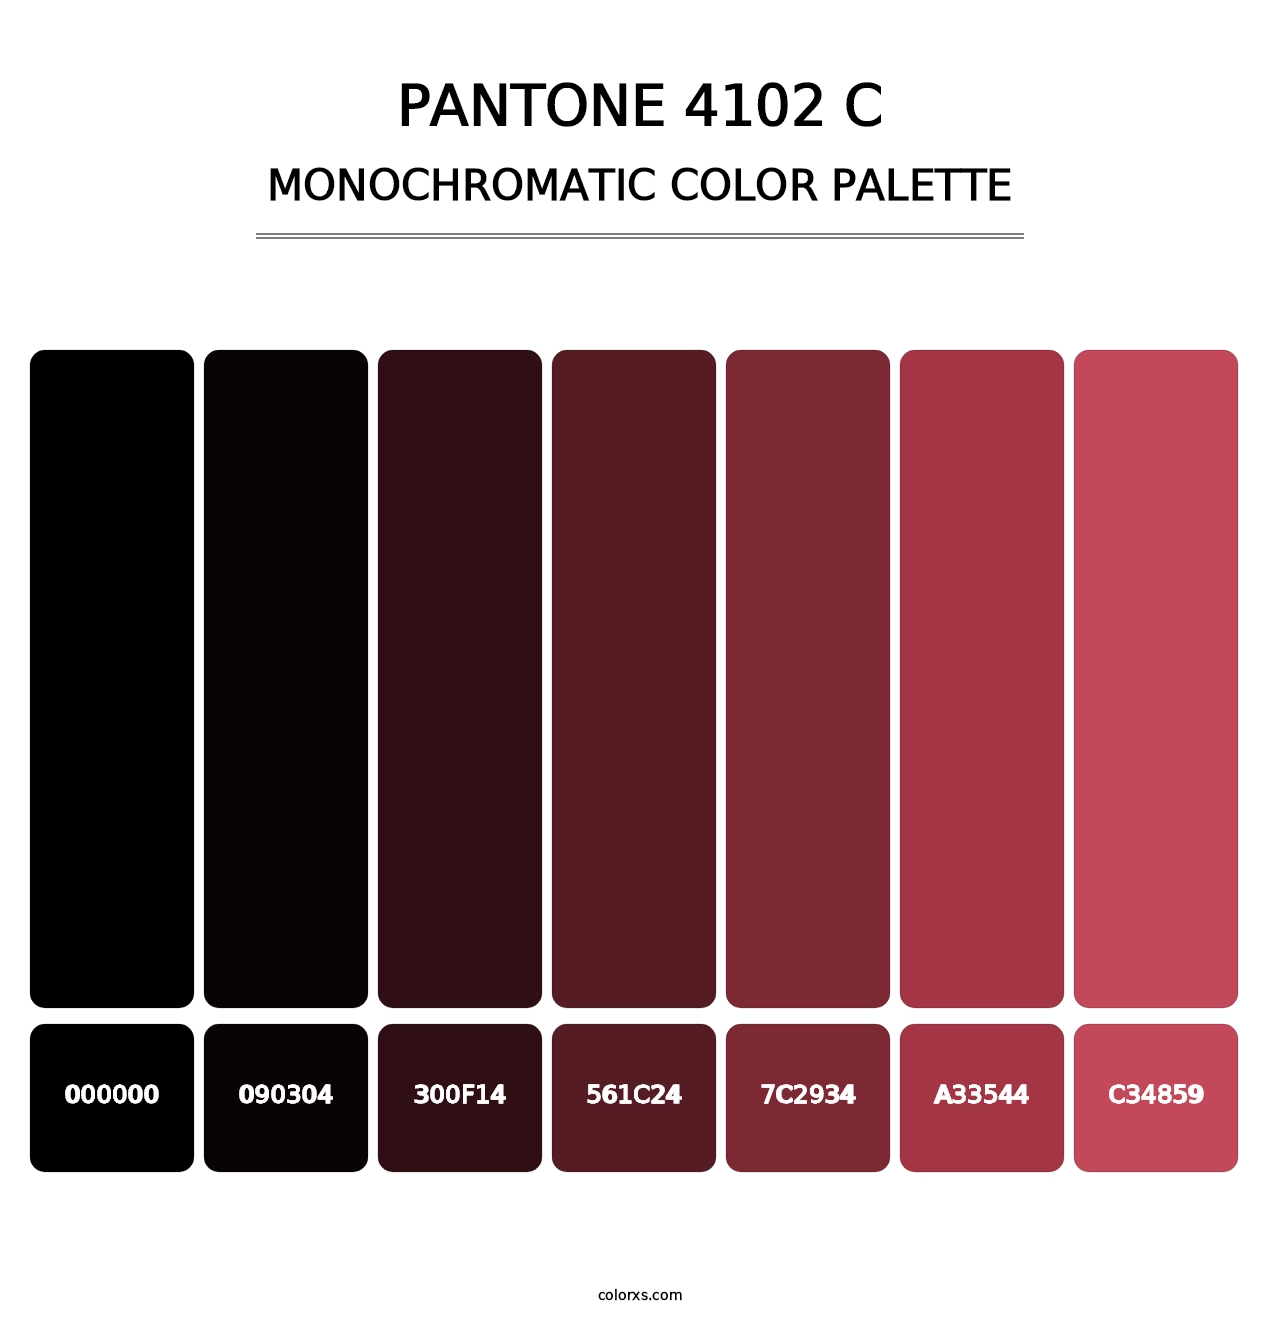 PANTONE 4102 C - Monochromatic Color Palette